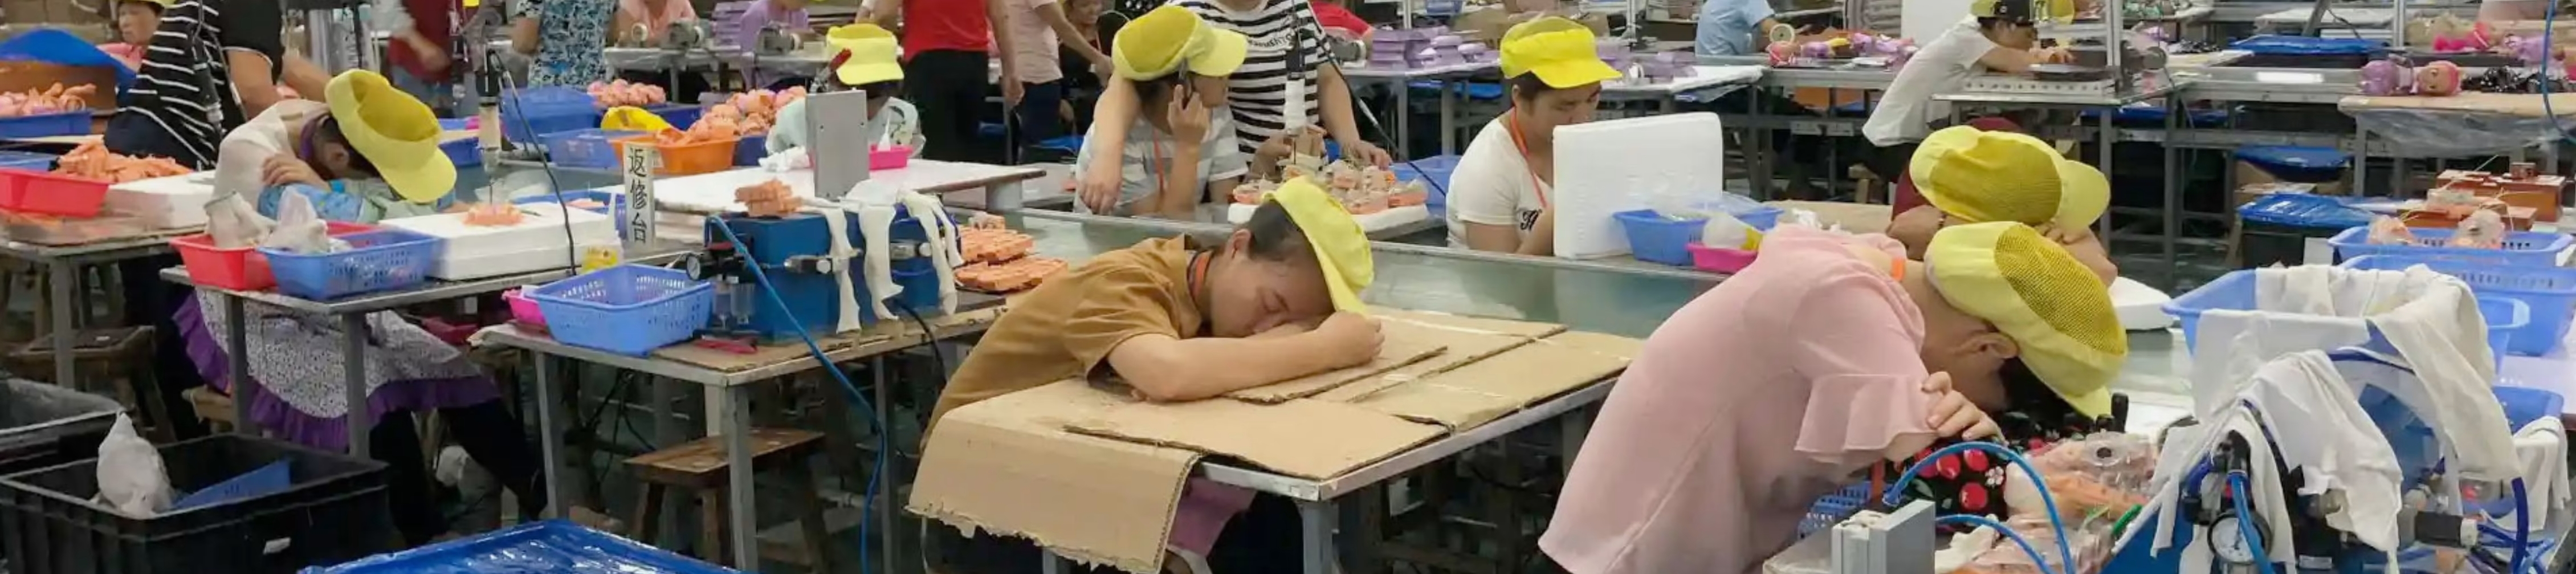 china-labor-watch-fabrik-china.jpg